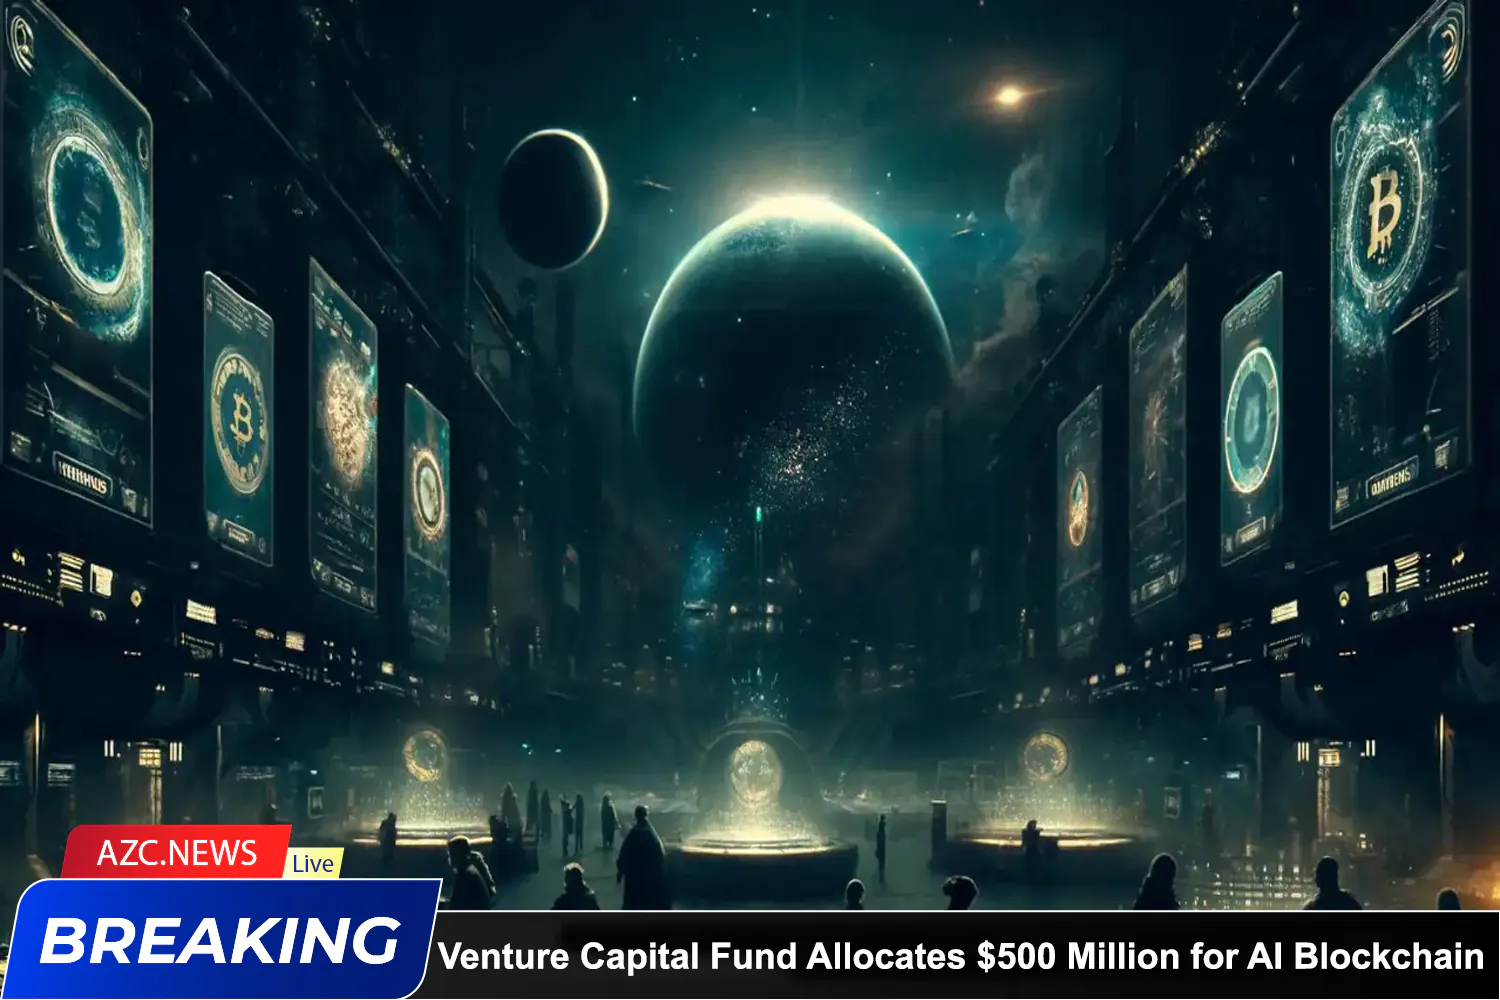 Azcnews Venture Capital Fund Allocates $500 Million For Ai Blockchain